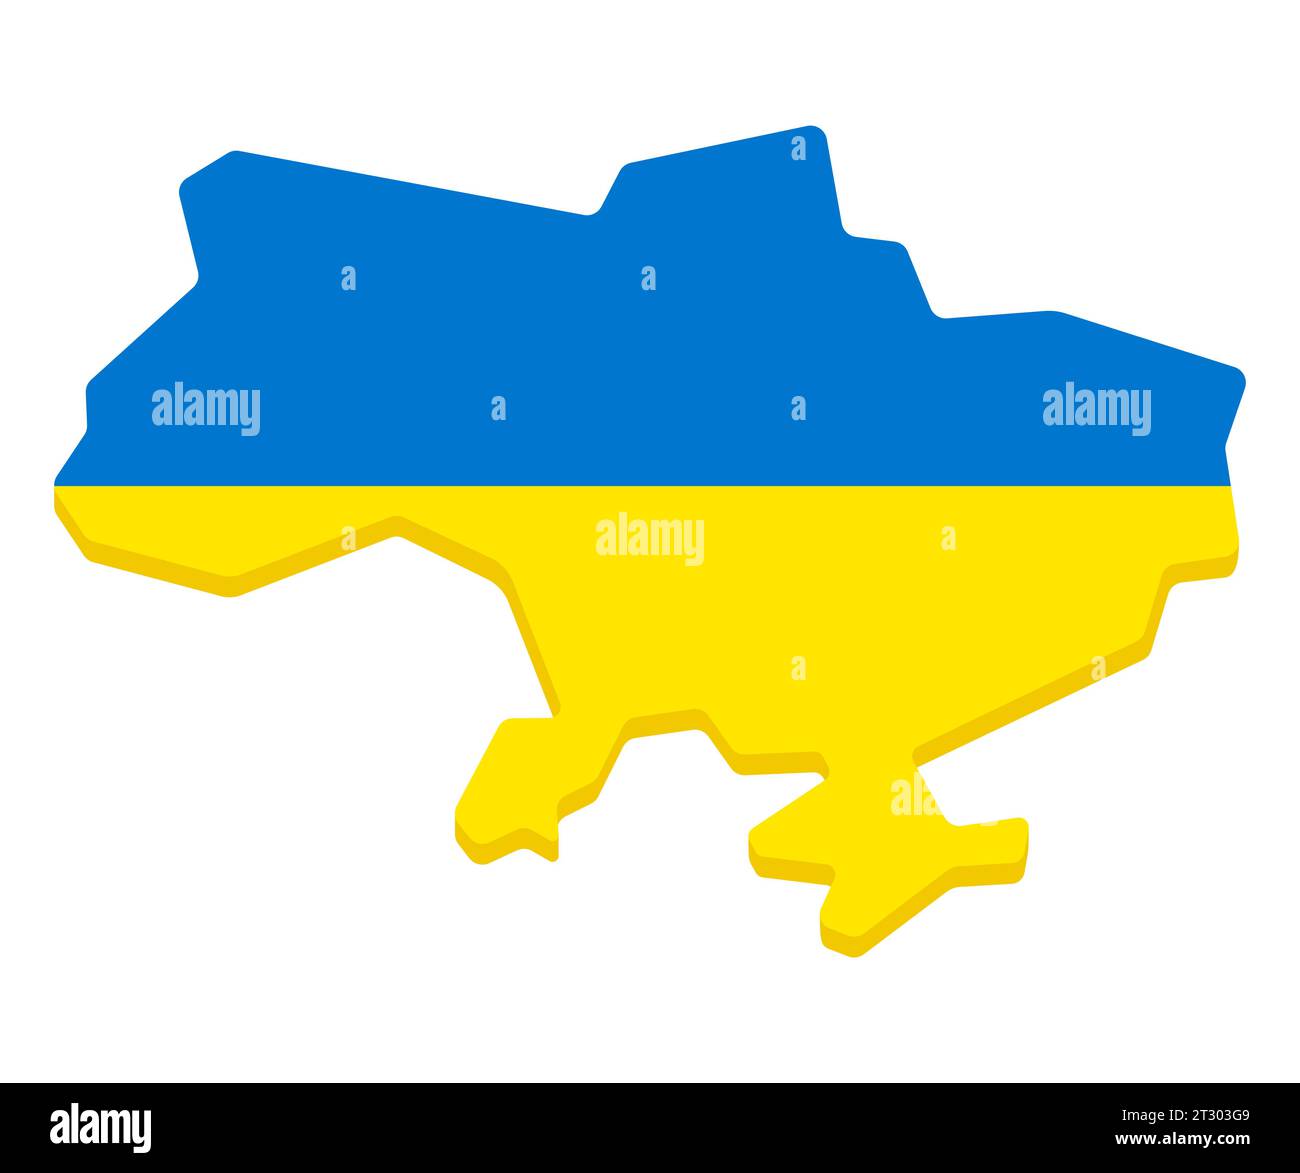 Semplice cartoni animati stilizzati dell'Ucraina nei colori della bandiera Ucraina. Illustrazione della clip art vettoriale piatta. Illustrazione Vettoriale